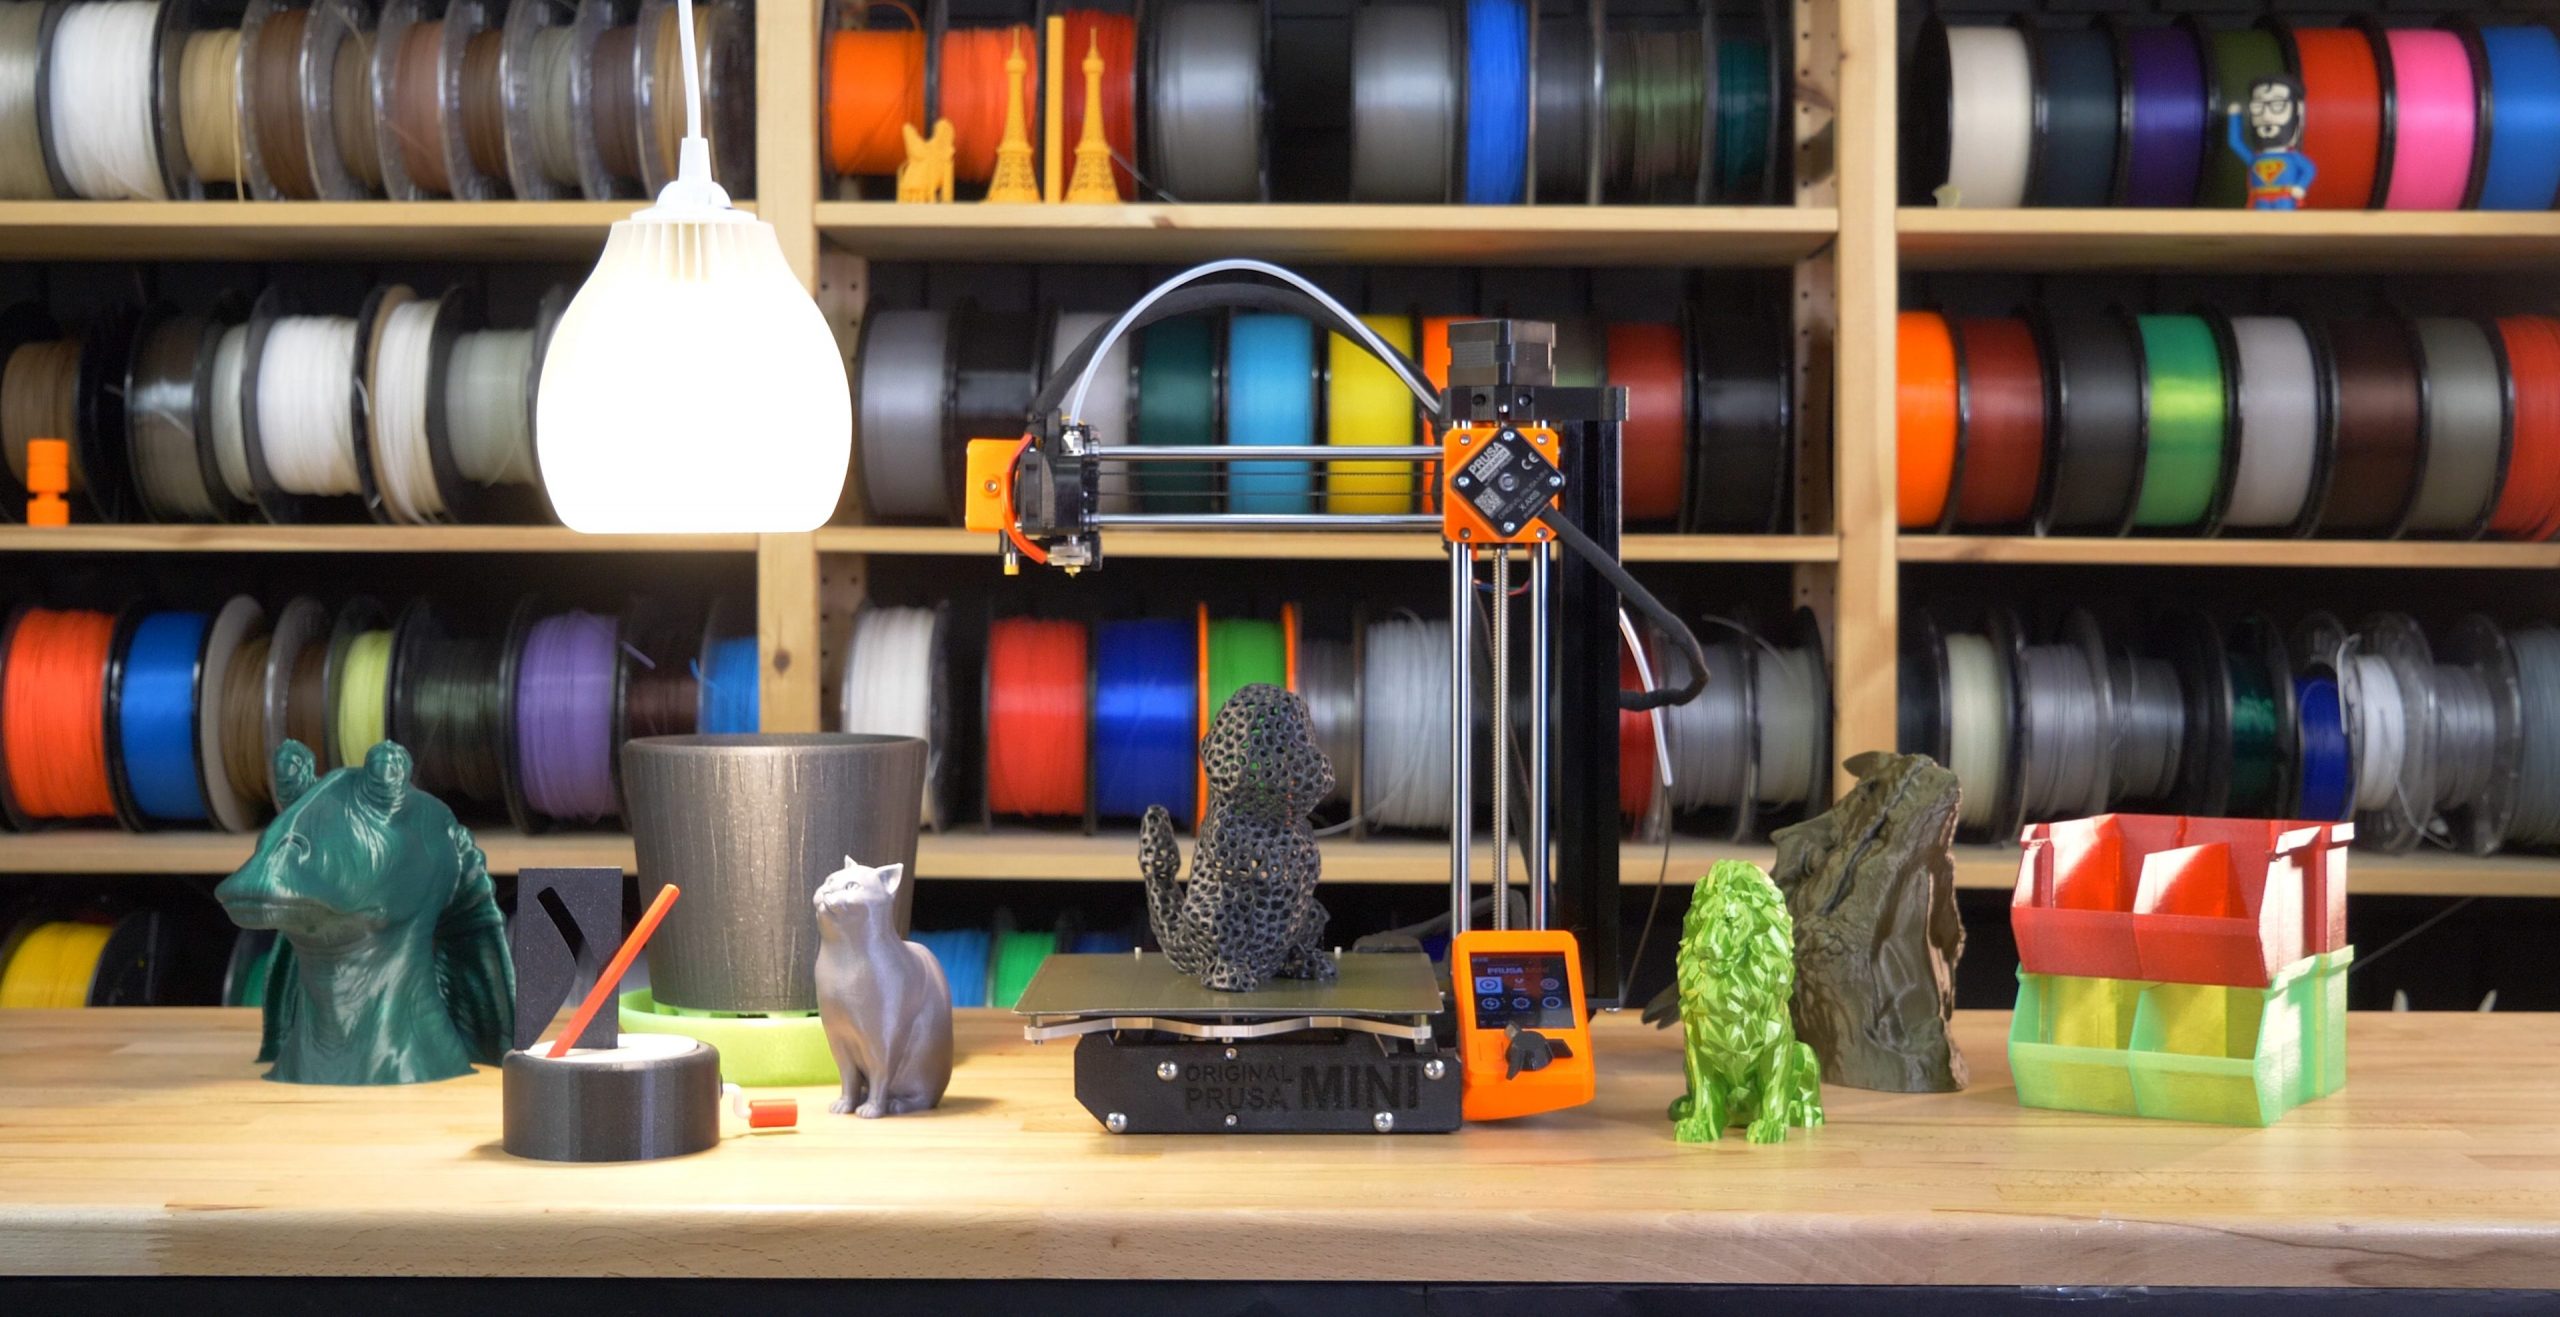 Maggiori informazioni su "5 motivi per cui comprare una stampante 3D economica è un'ottima idea"